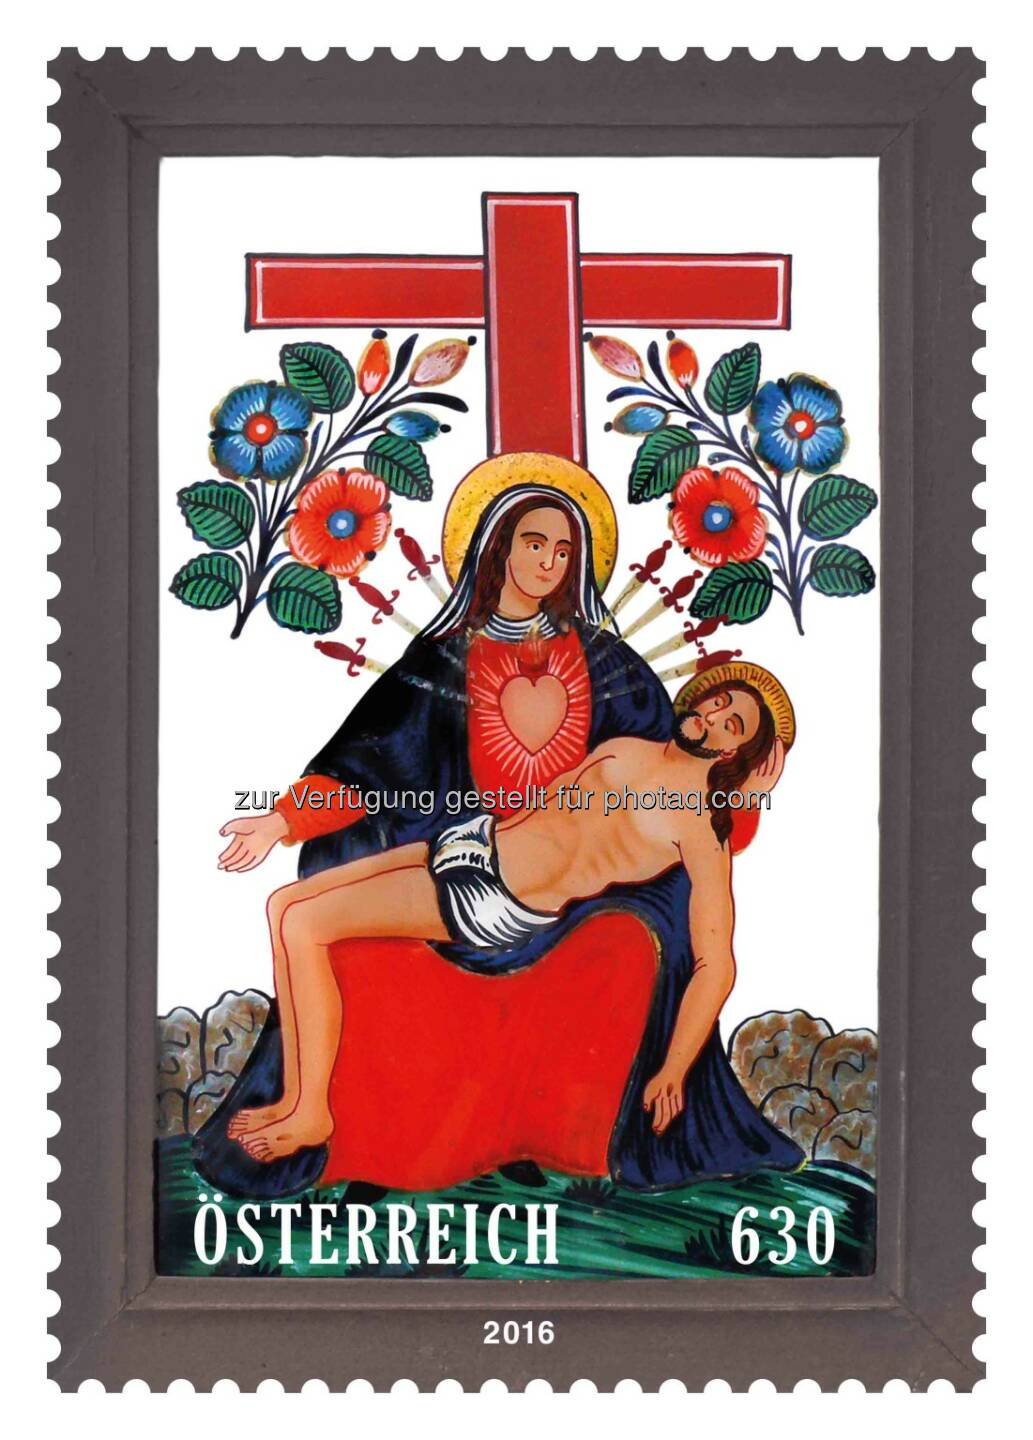 Marke „Pietà am Kreuz“ : Österreichische Post präsentiert weltweit erste Briefmarke aus Glas : Fotocredit: Österreichische Post